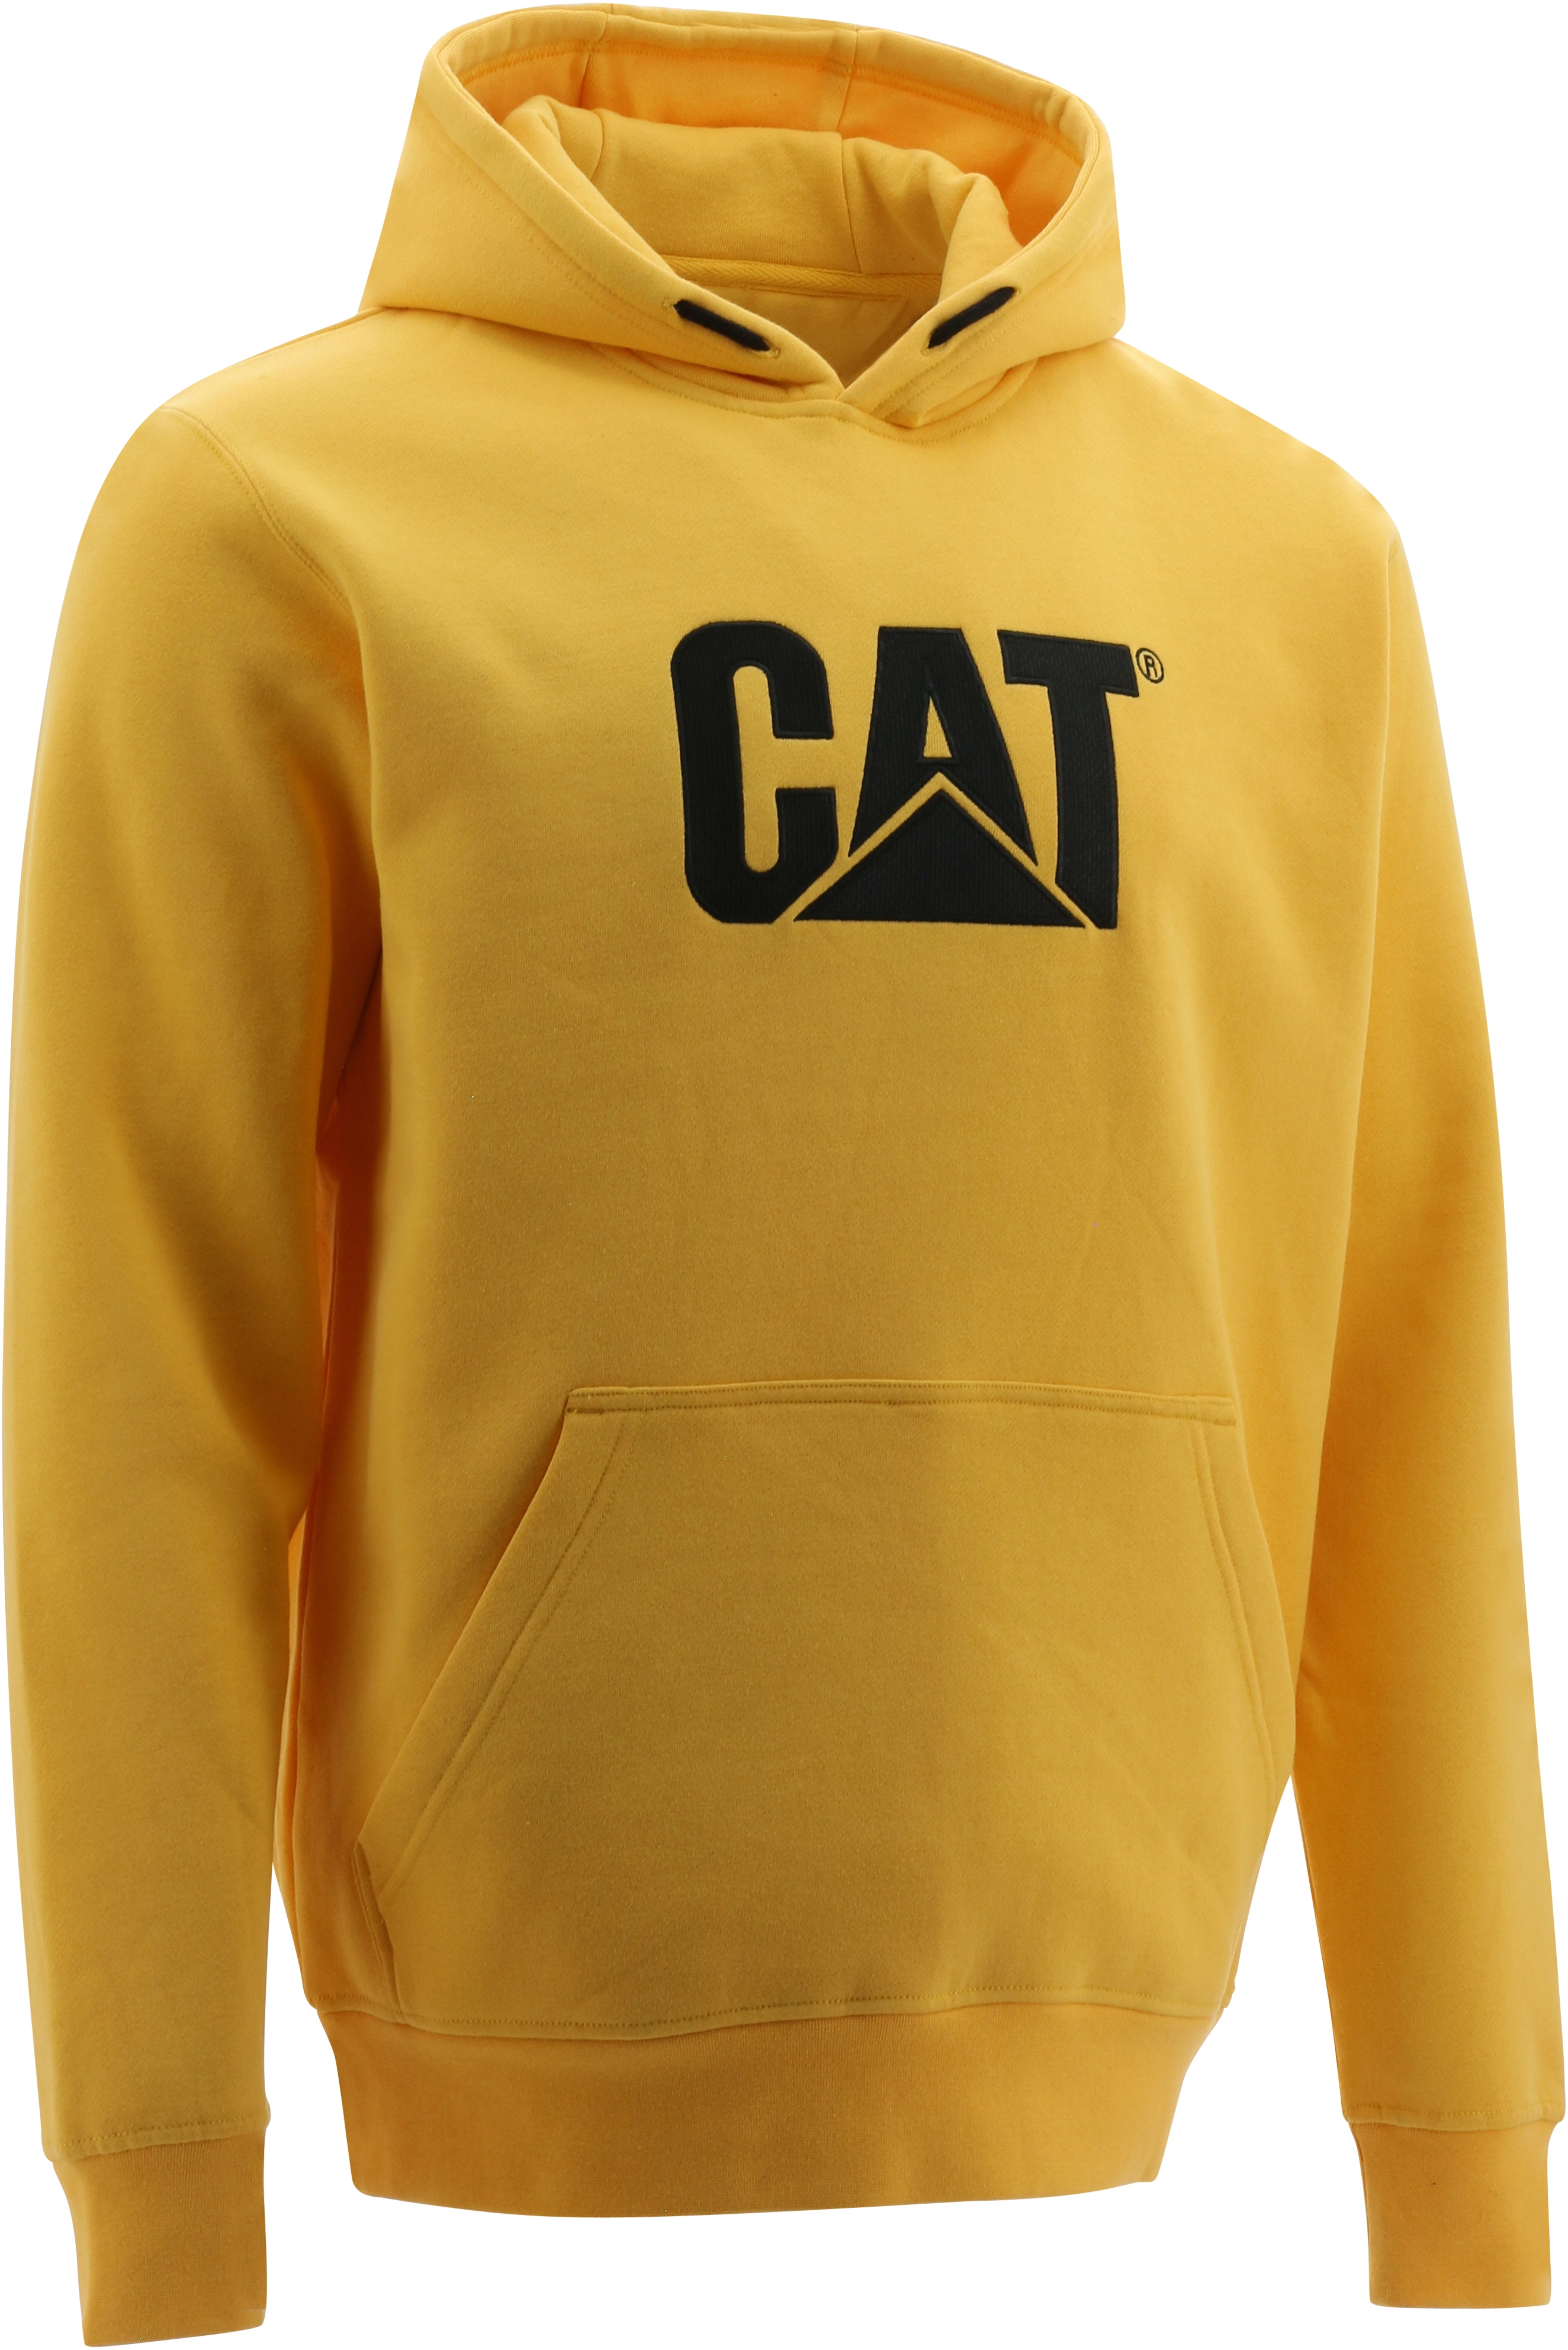 Cat M bei Hoodie OBI kaufen Gelb Trademark